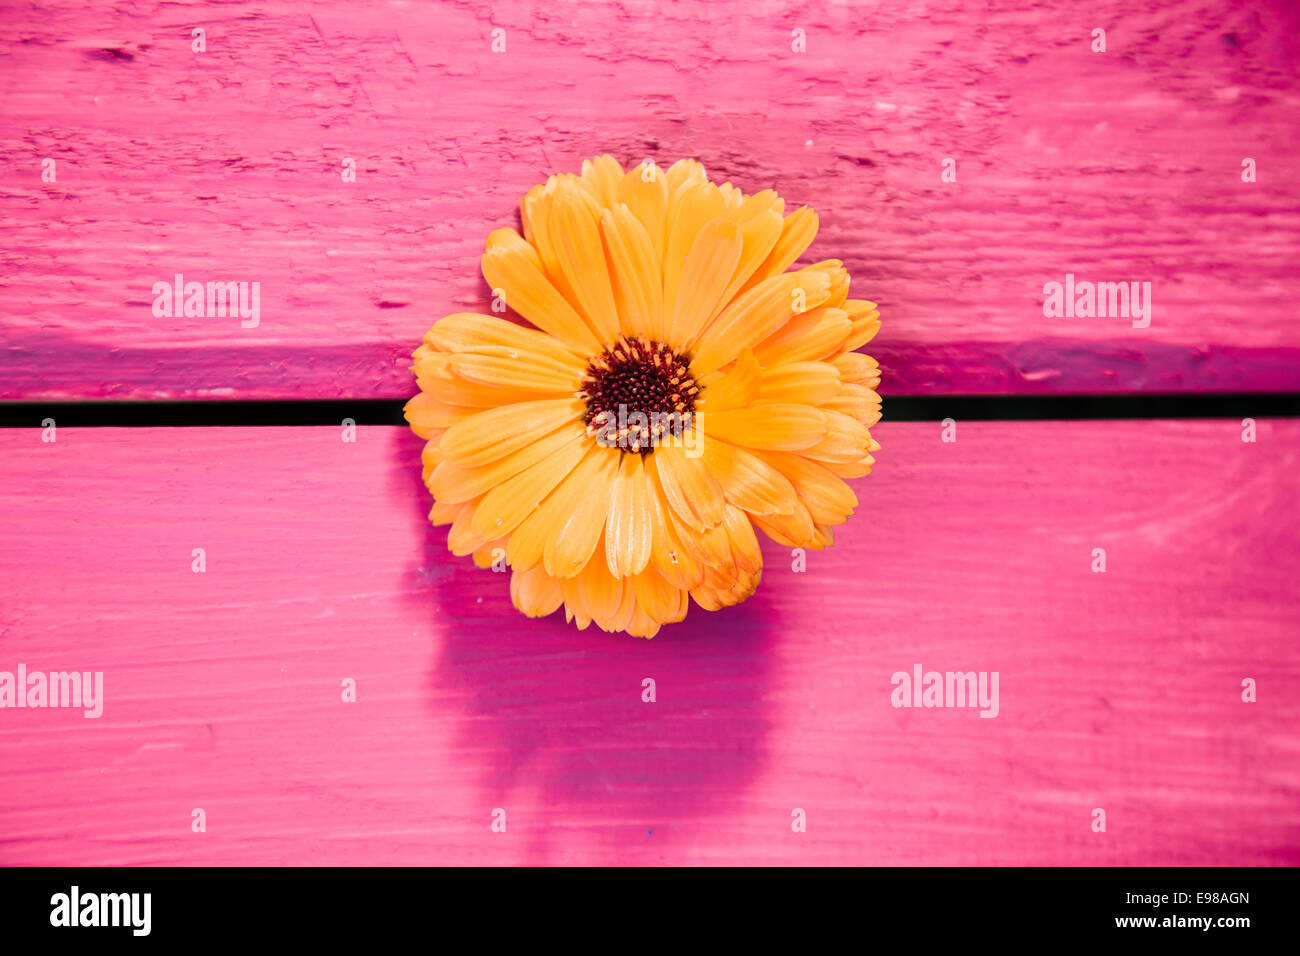 Gerbera Jaune fleur, symbole de la finesse et la distinction, sur une table en bois, peint en rose Banque D'Images